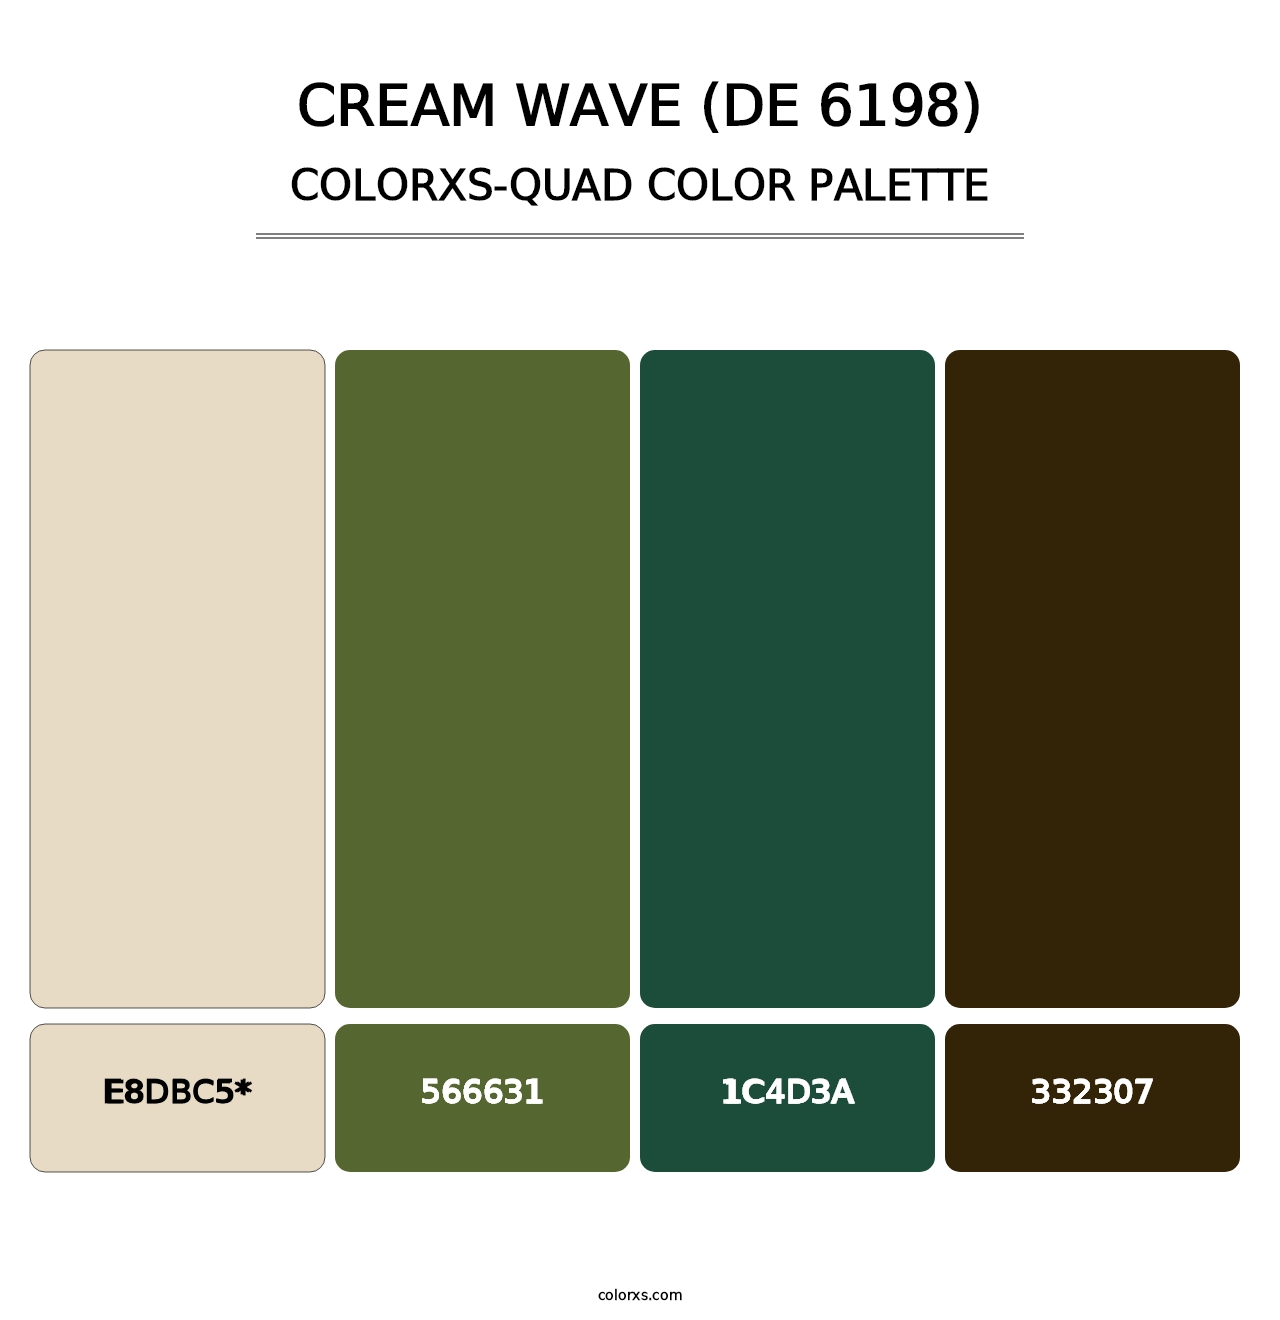 Cream Wave (DE 6198) - Colorxs Quad Palette